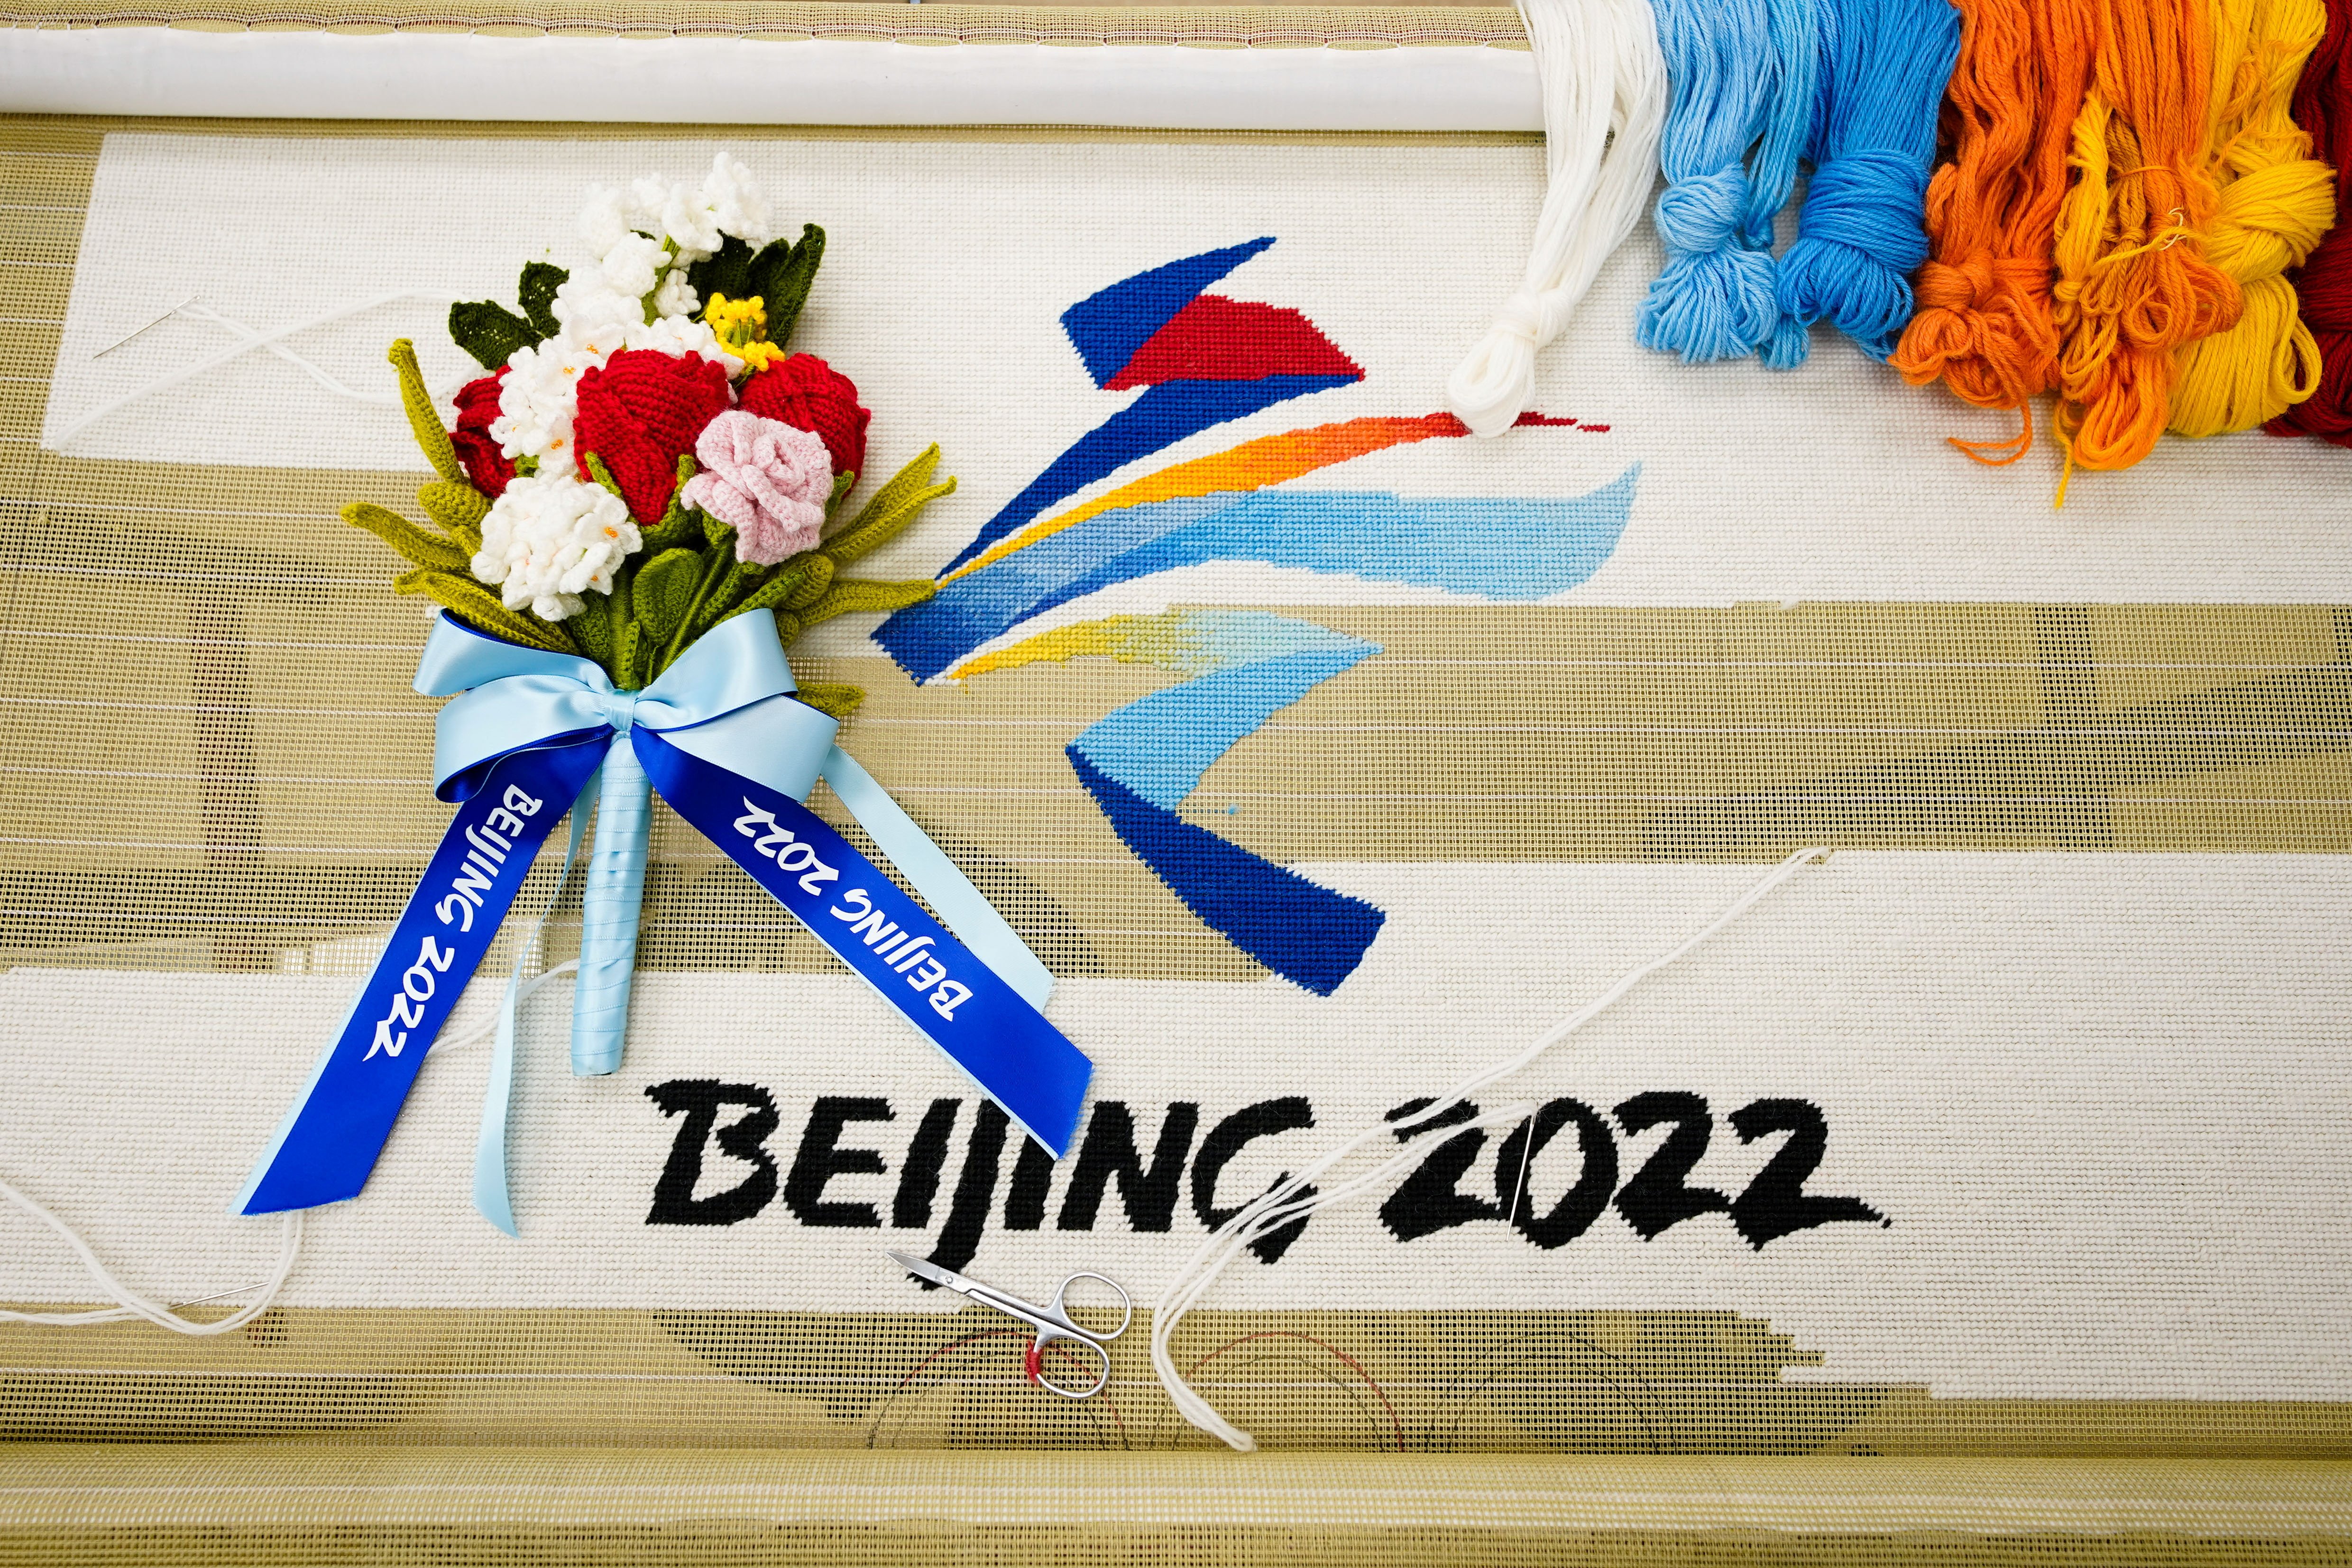 北京冬奥颁奖花束图片图片